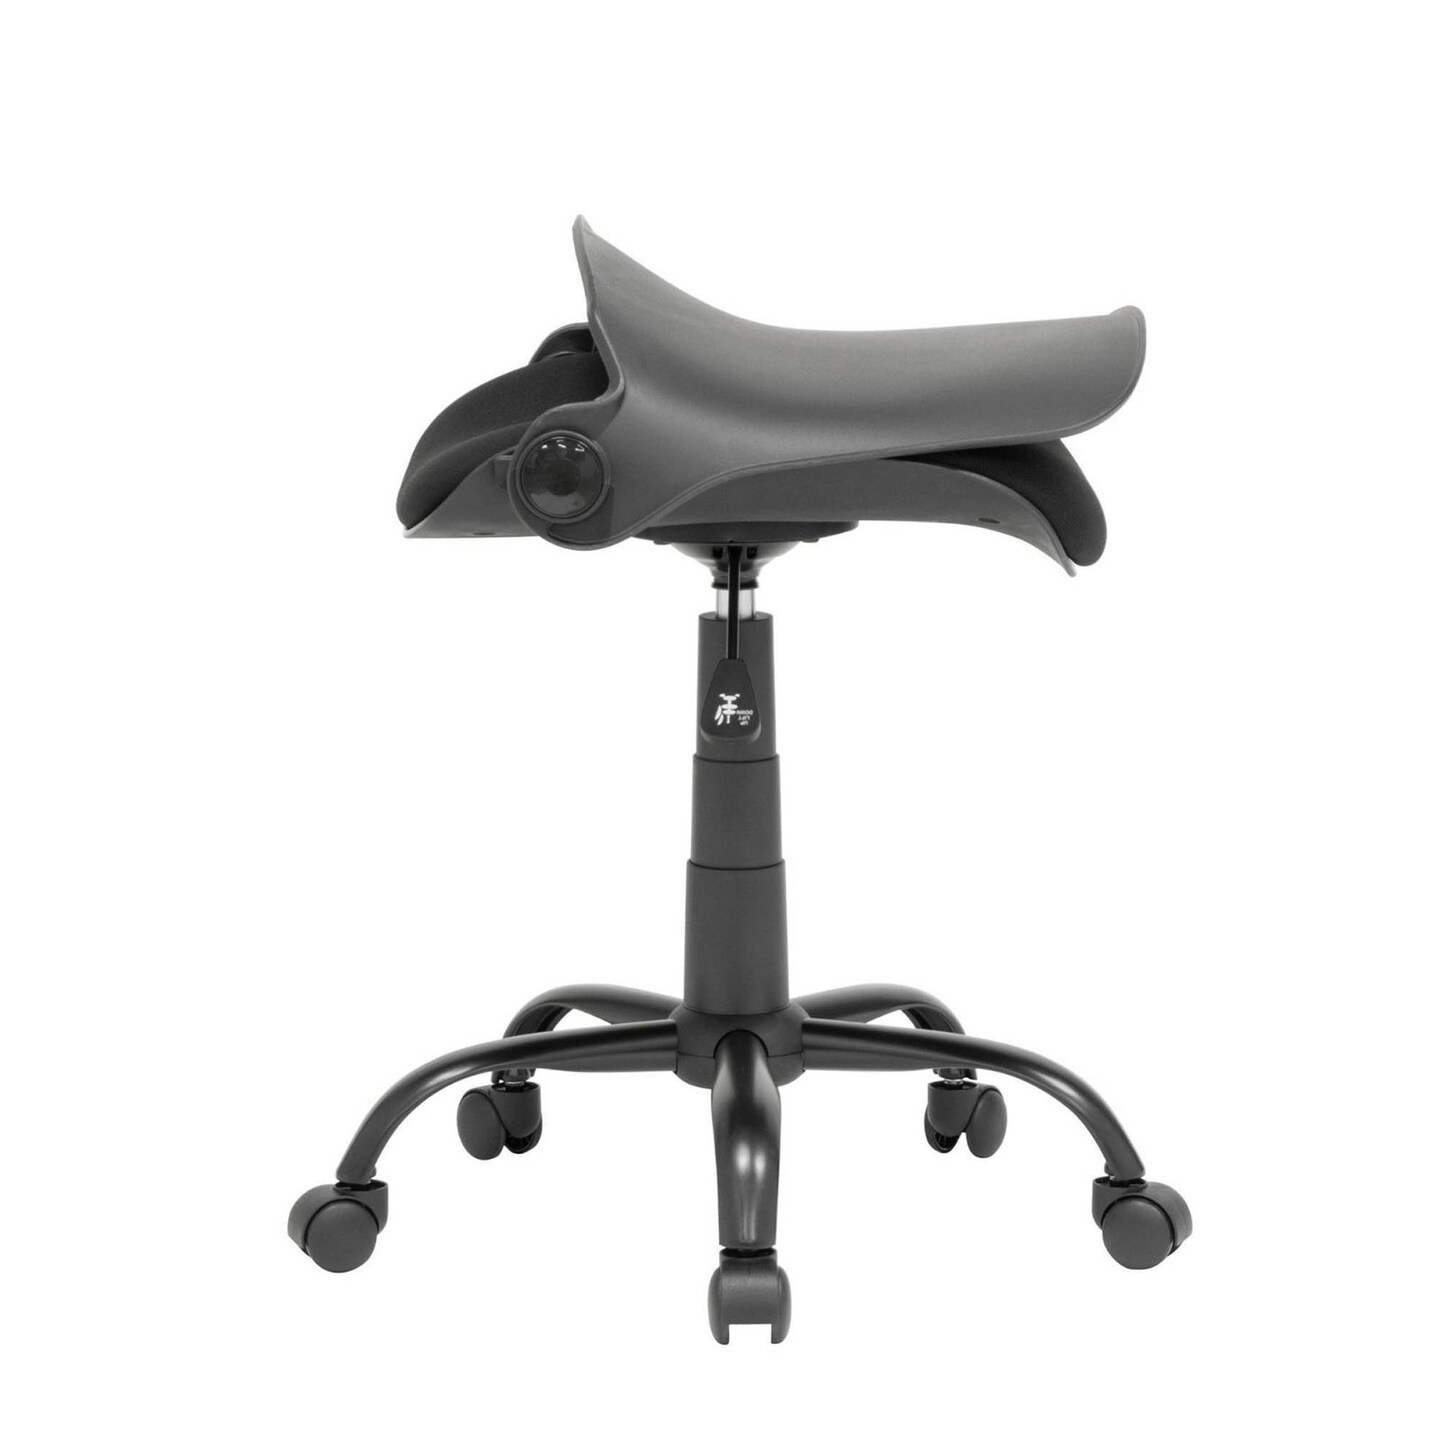 Folding Back Modern Swivel Office Task Chair - Black, Black